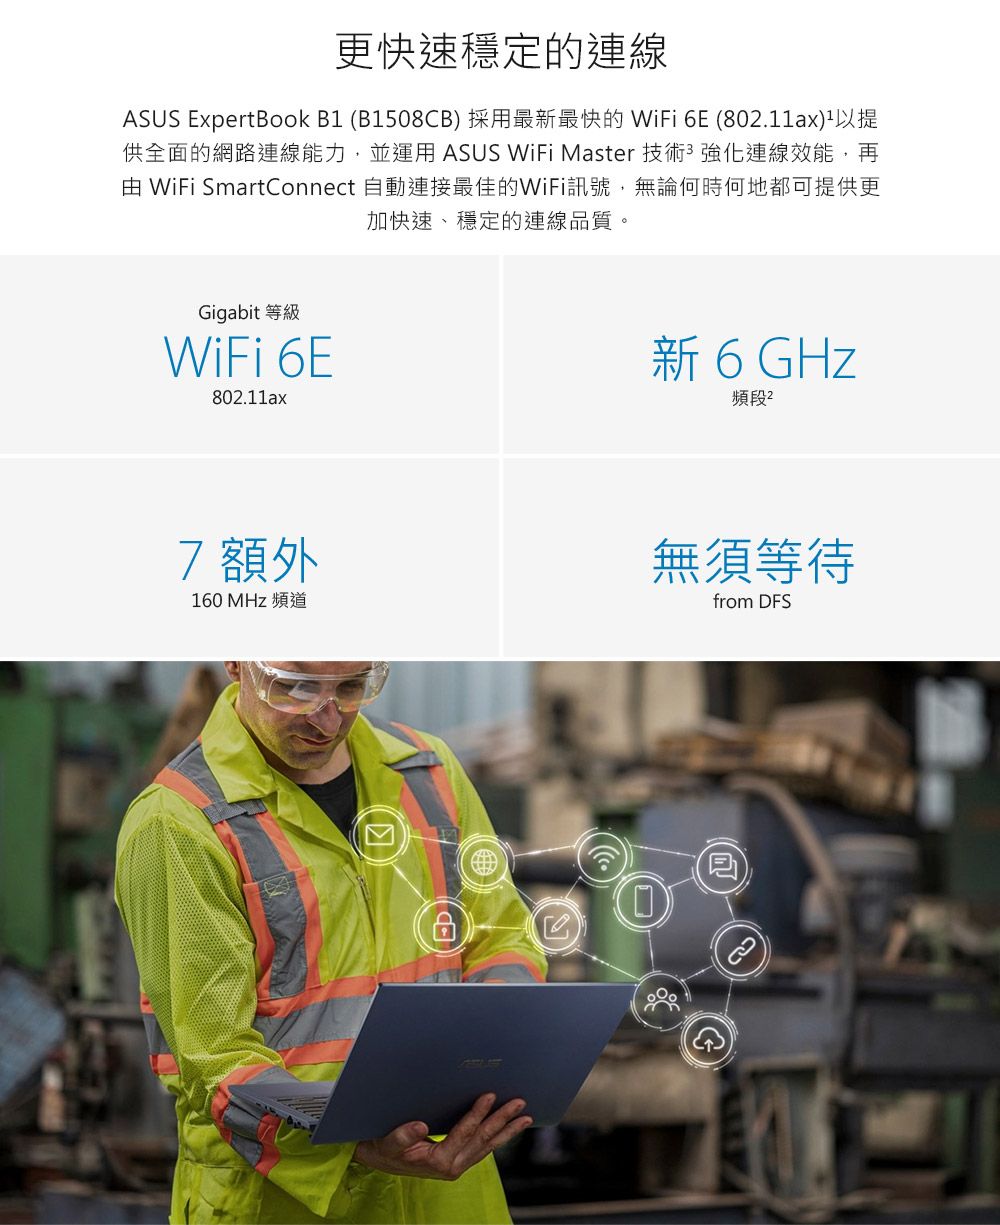 更快速穩定的連線ASUS ExpertBook B (B1508CB) 採用最新最快的 WiFi 6E (80.11ax)1以提供全面的網路連線能力,並運用 ASUS WiFi Master 技術強化連線效能,再 WiFi SmartConnect 自動連接最佳的WiFi訊號,無論何時何地都可提供更加快速、穩定的連線品質。Gigabit 等級WiFi 6E802.11ax新 6 GHz頻段2 額外160 MHz 頻道無須等待from DFS